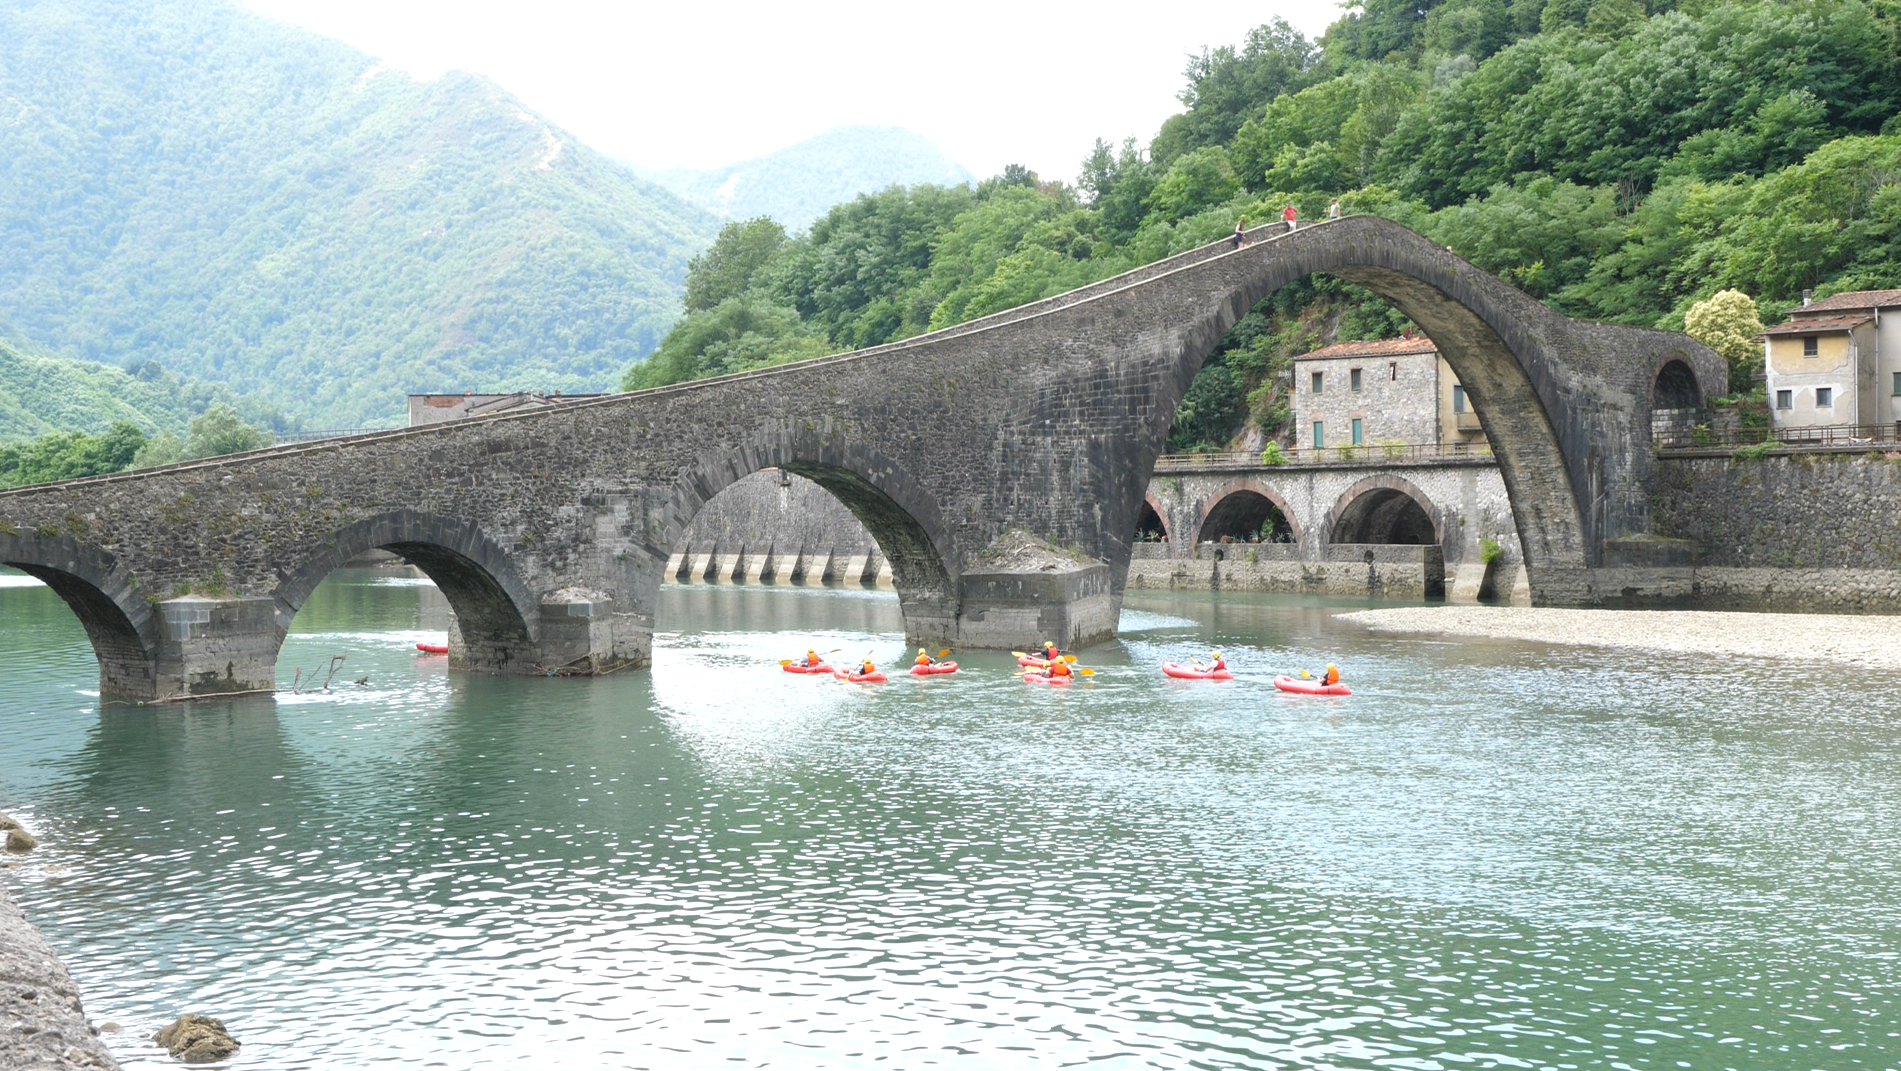 Water activities under the bridge